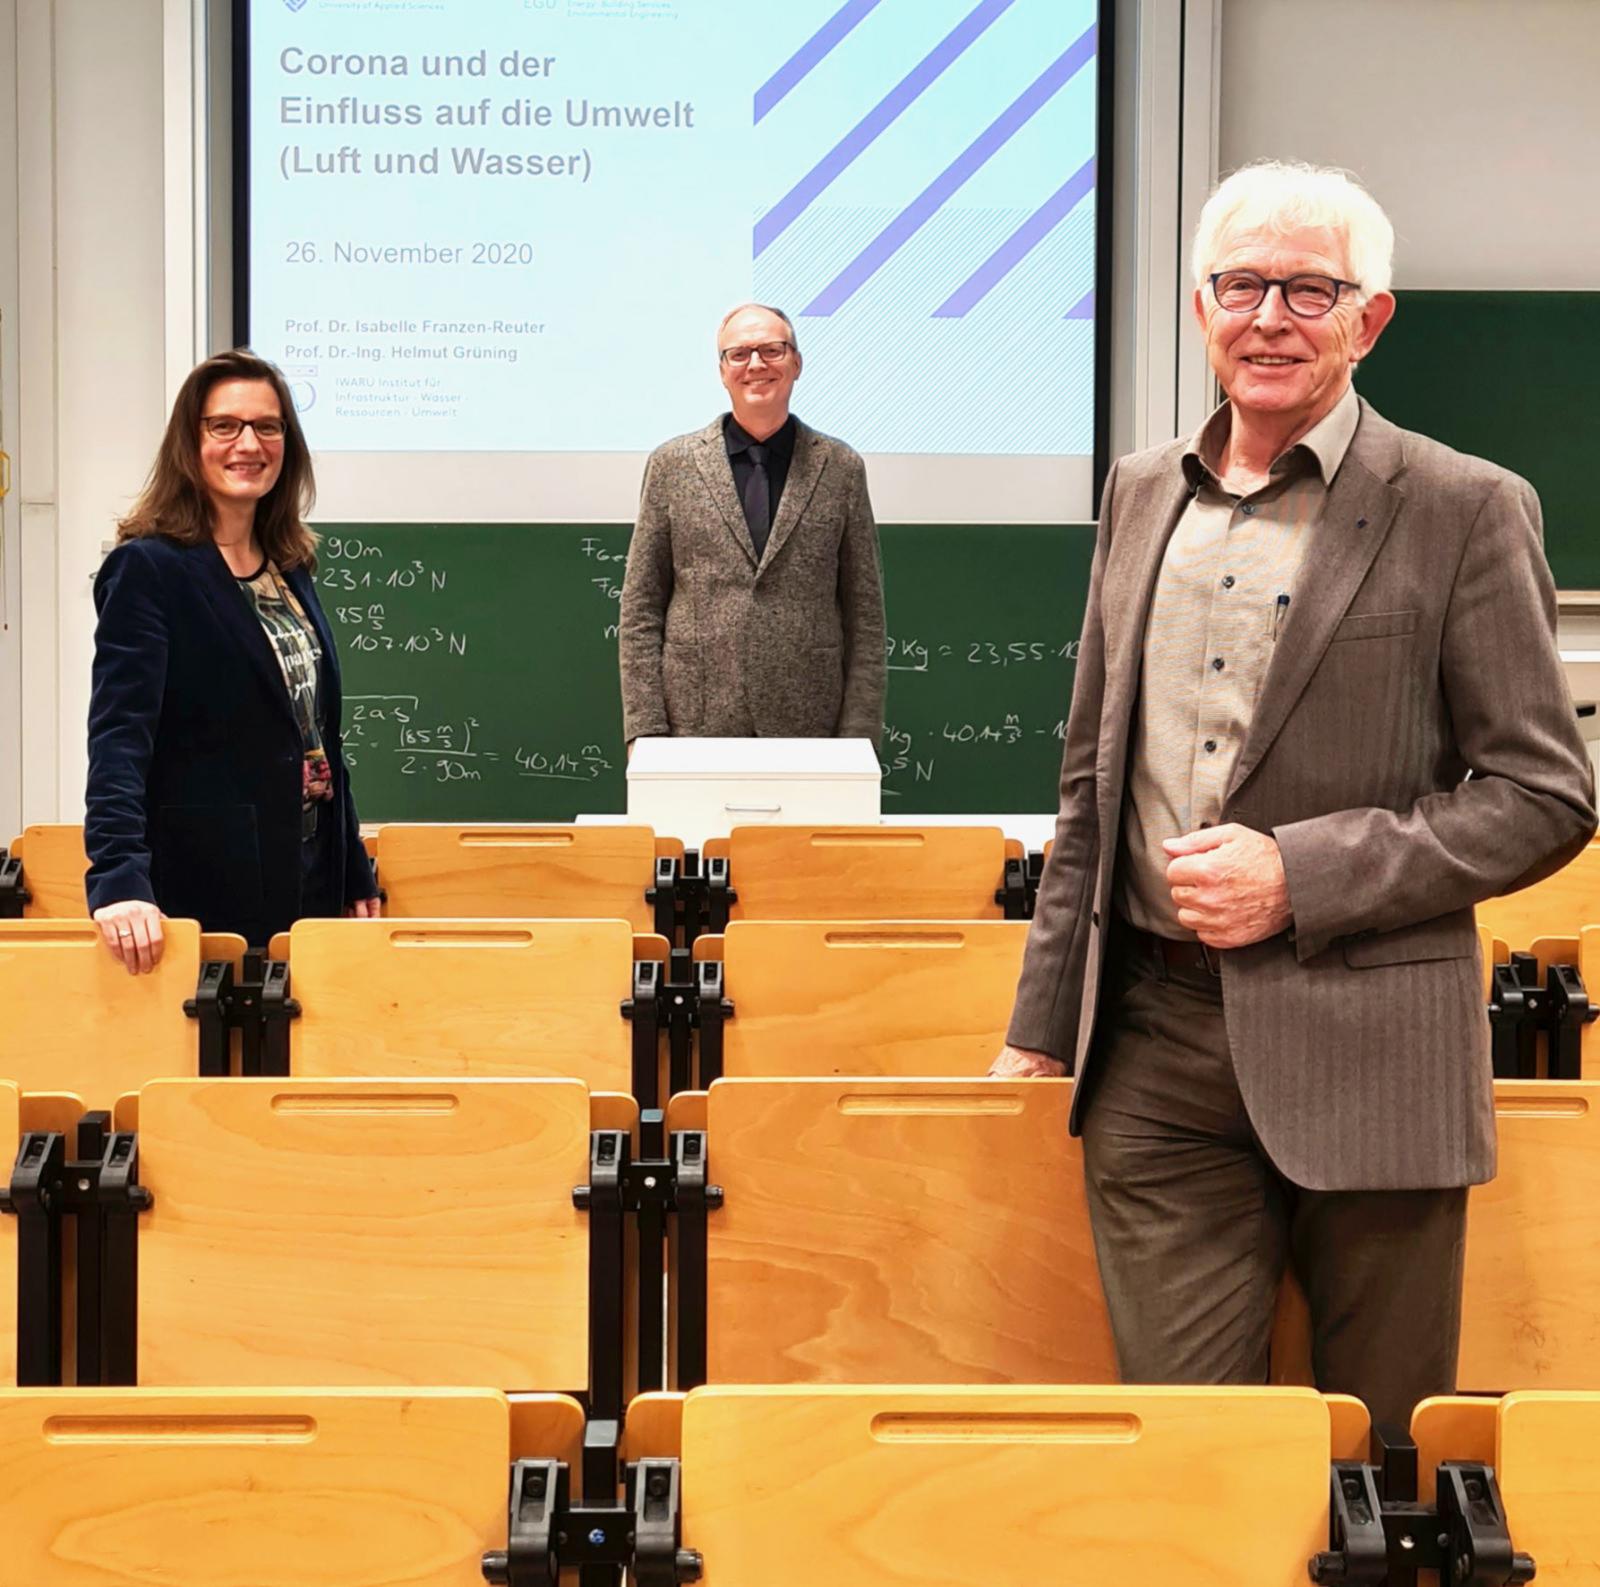 Prof. Isabelle Franzen-Reuter (l.), Prof. Helmut Grüning (m.) und Seniorprofessor Richard Korff (r.) führten anschaulich durch die ersten digitalen Campus Dialoge. (Foto: FH Münster/Rena Ronge)